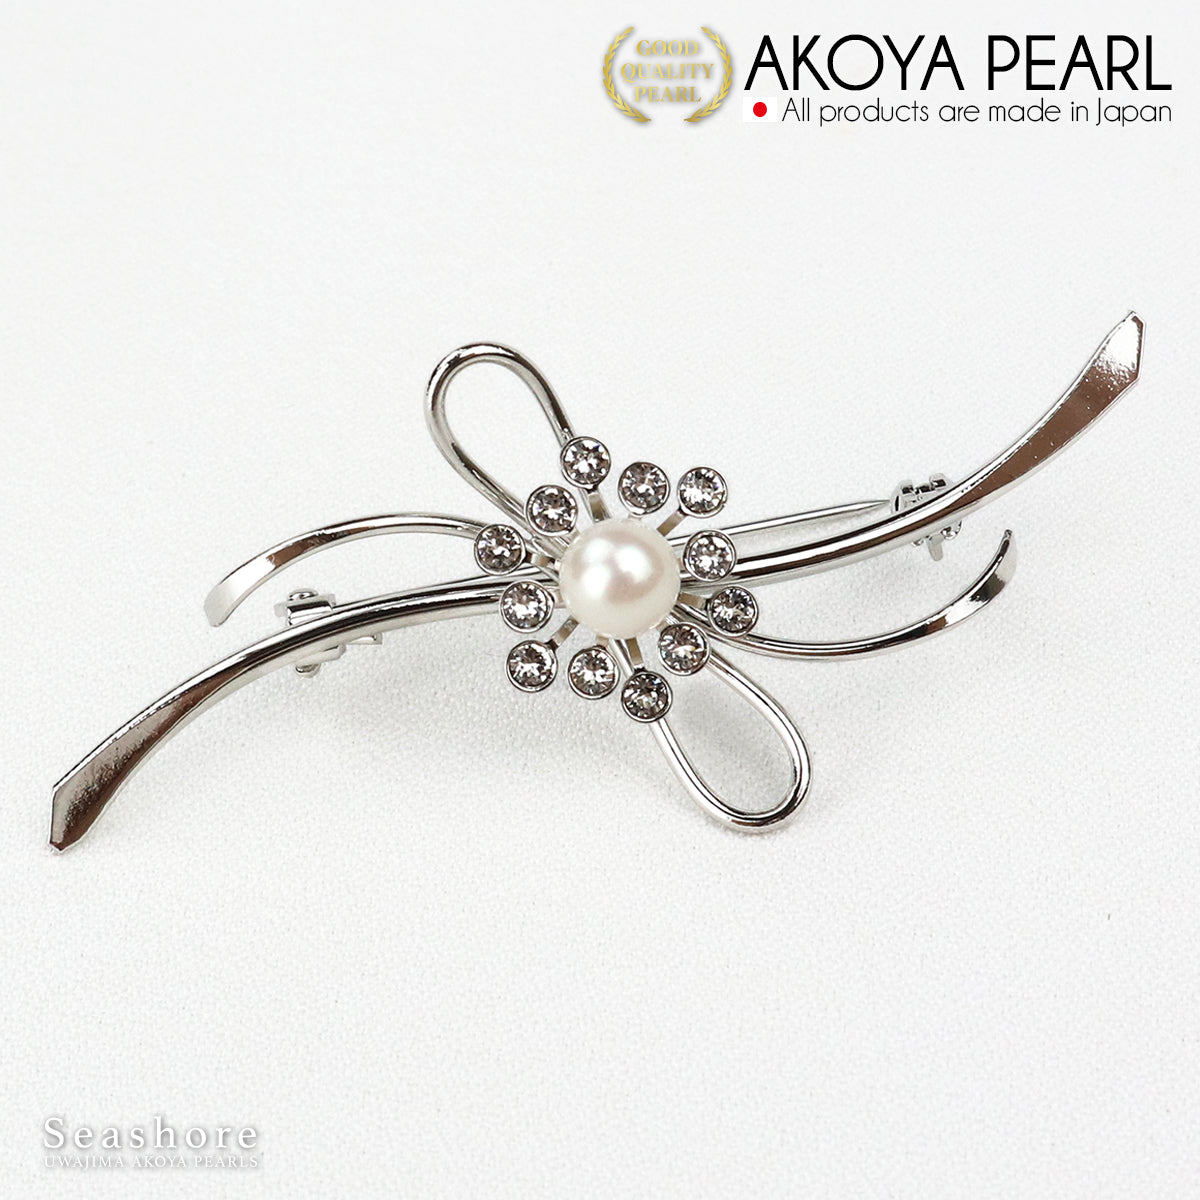 珍珠胸针波浪线丝带黄铜白色 6.5-7.0 毫米 Akoya 珍珠带收纳盒 (3928) 